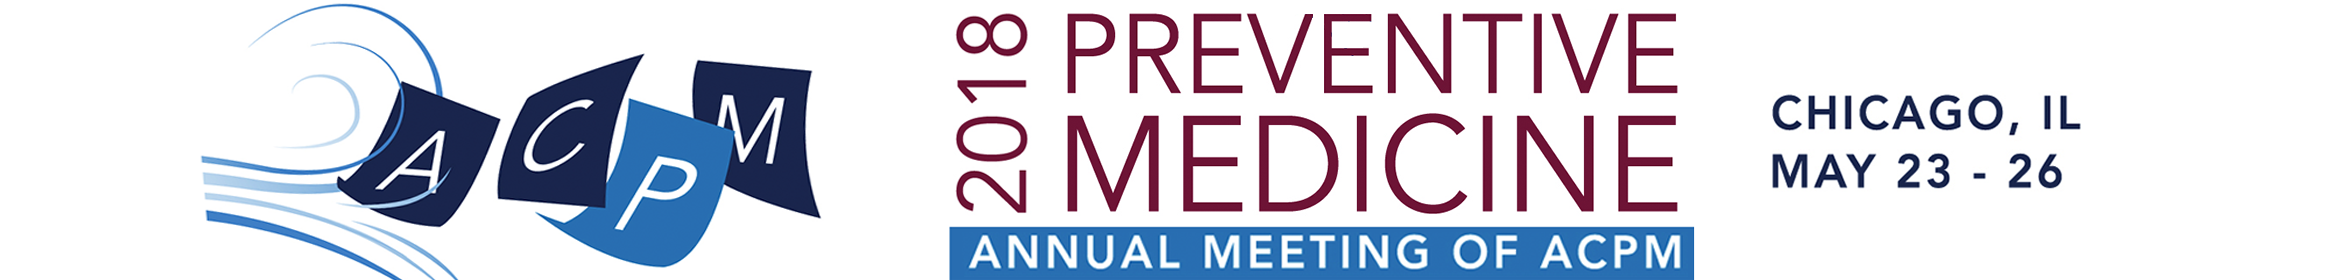 Preventive Medicine 2018 Main banner